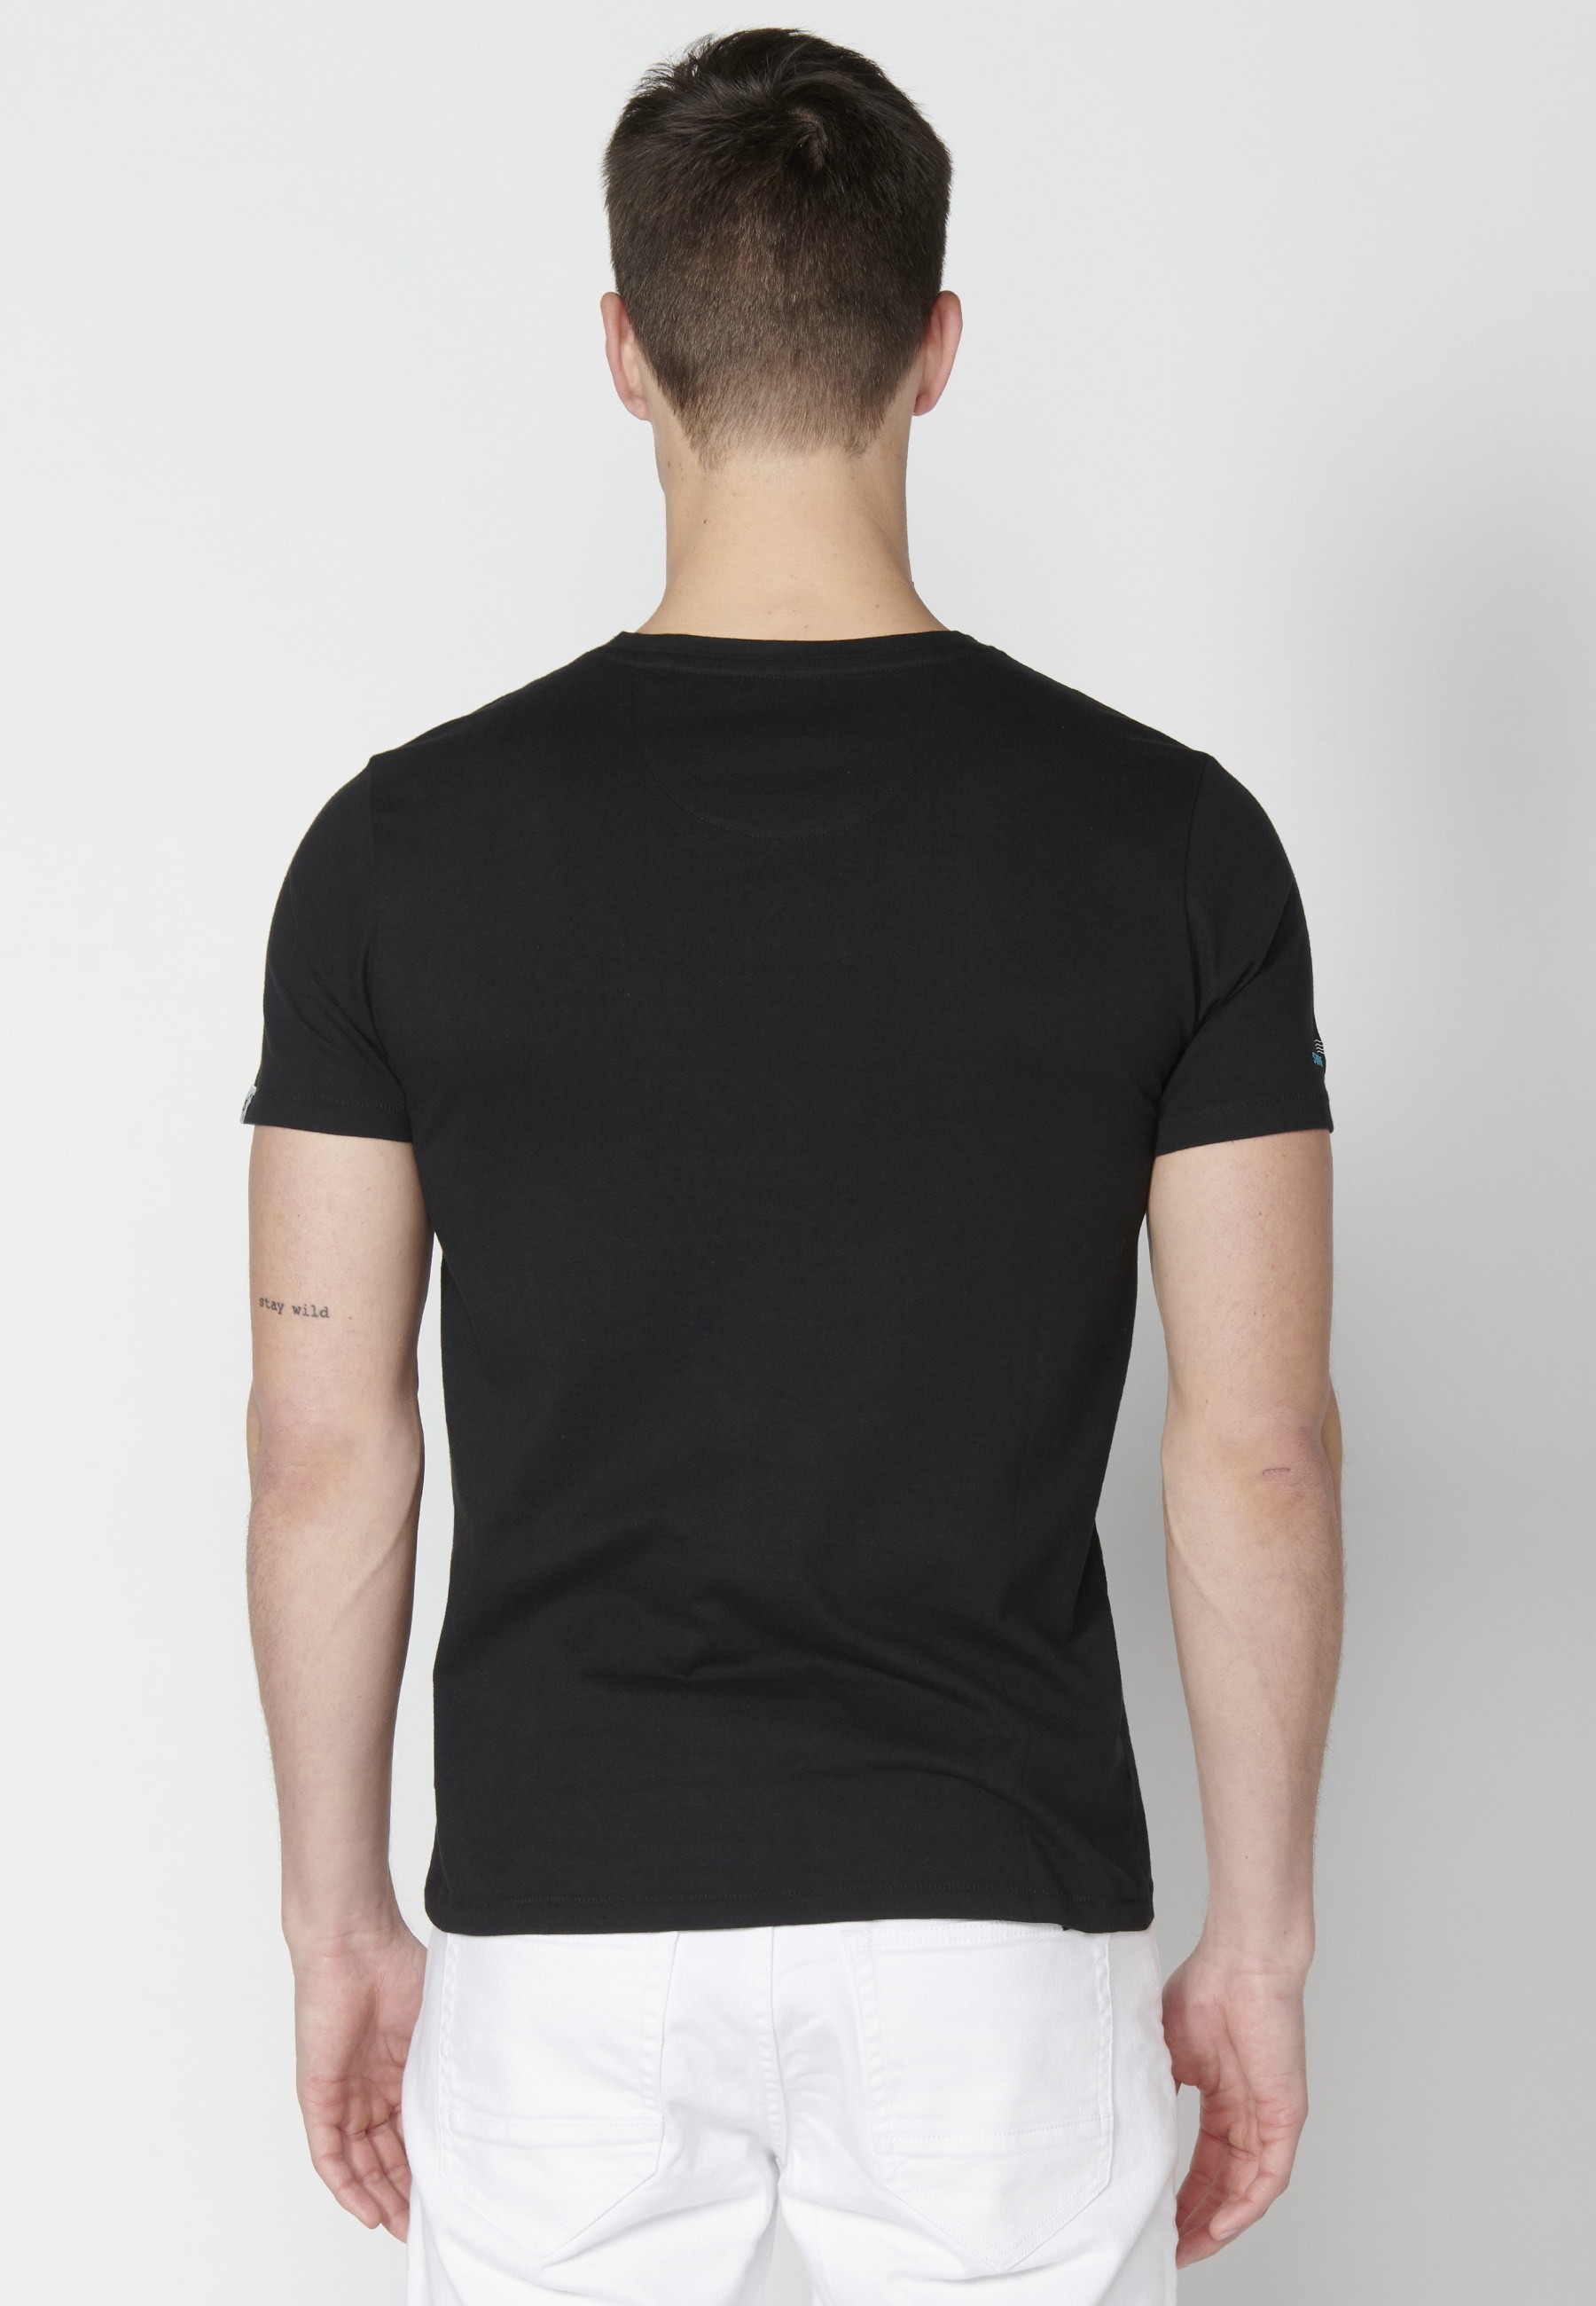 Short-sleeved Black Cotton T-shirt for Men